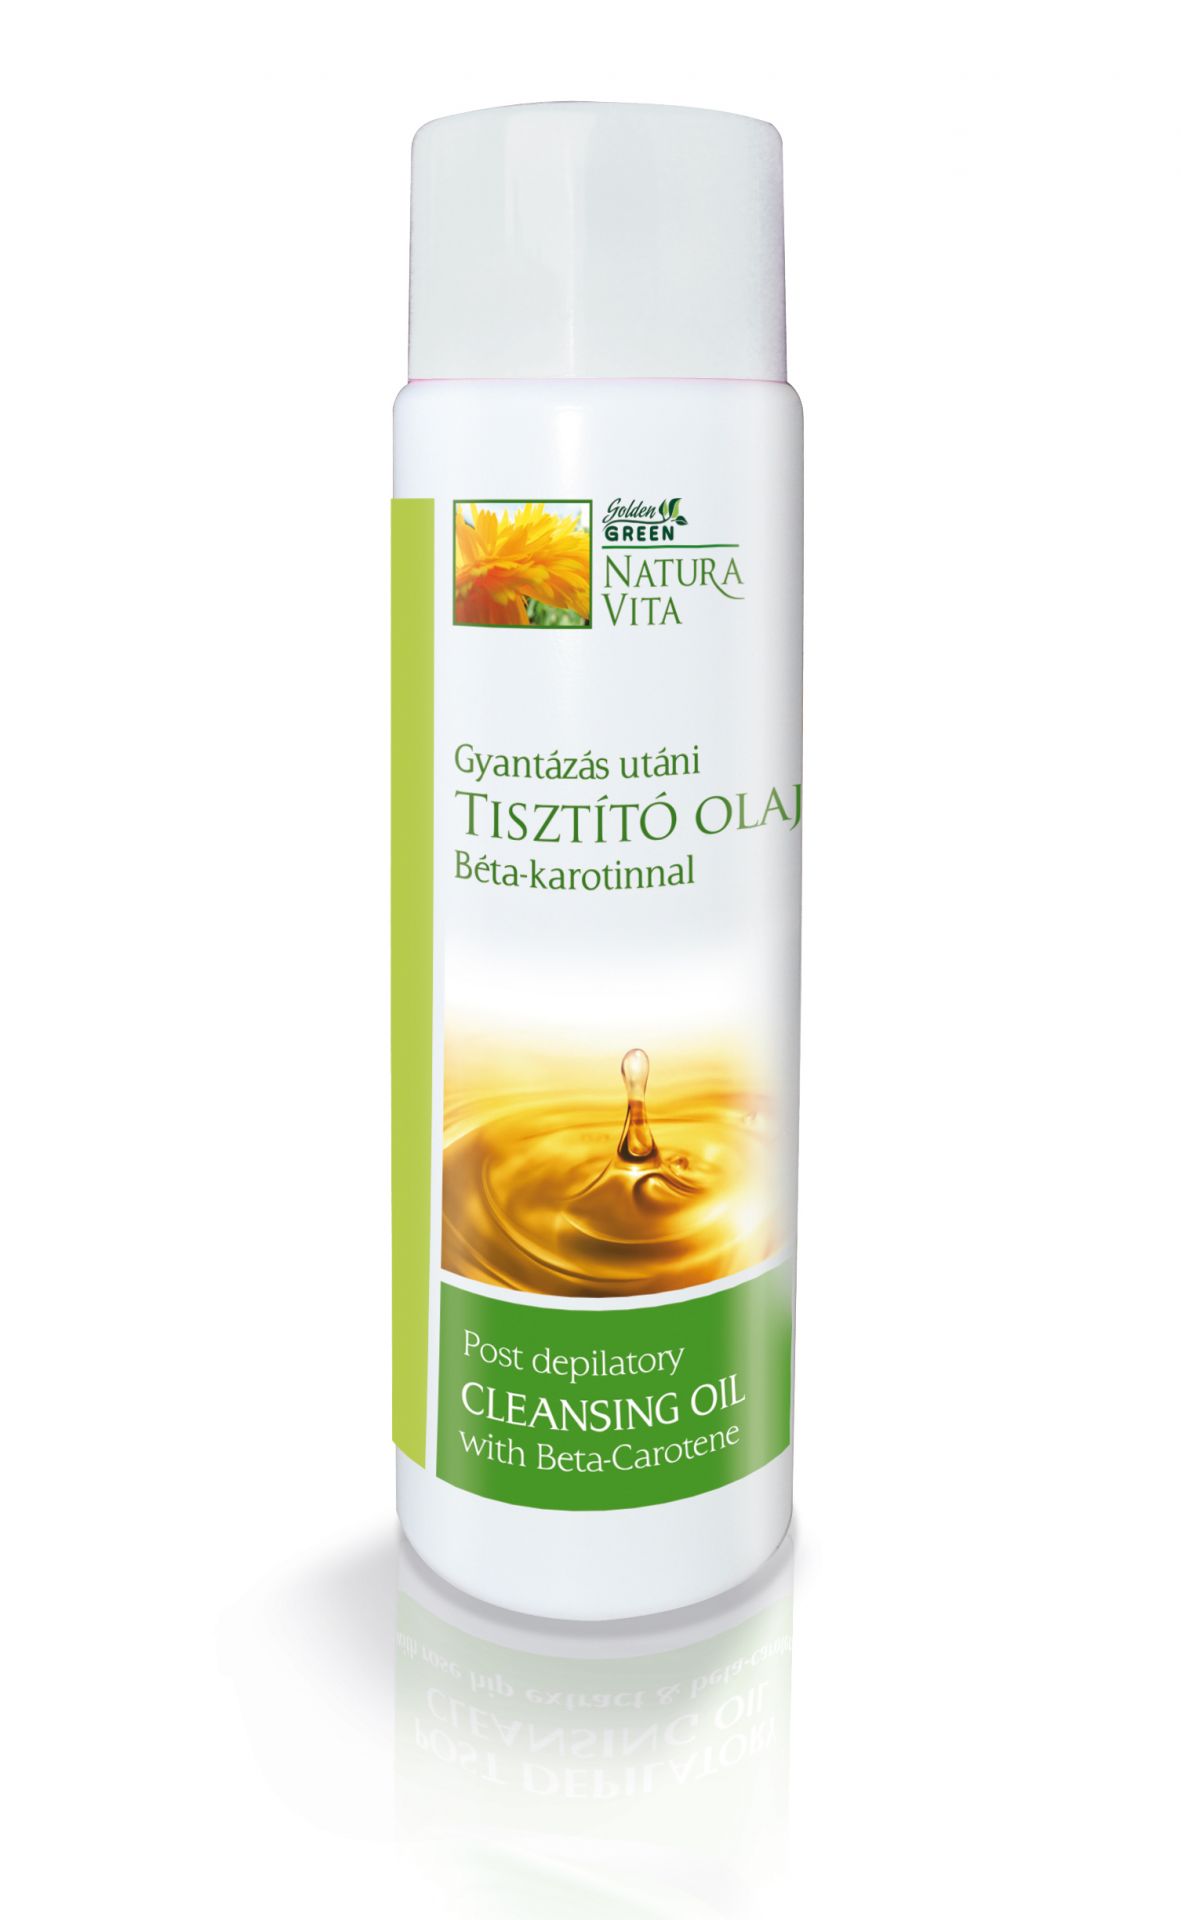 Golden Green Natura Vita gyantázás utáni tisztító olaj Béta-karotinnal 250 ml